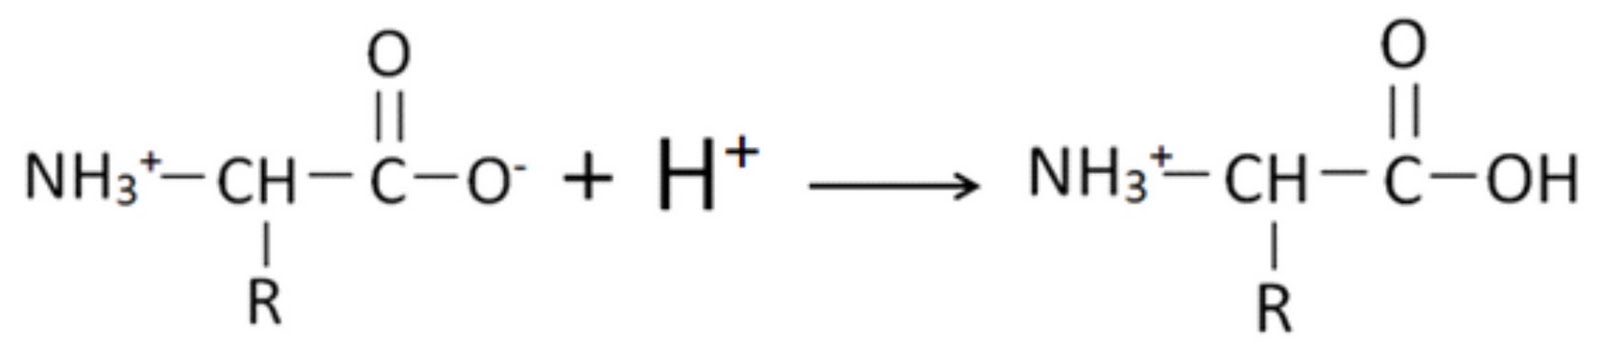 Акриловая кислота nh3. Этиламин этанол. Акриловая кислота с бромоводородом. Полимеризация акриловой кислоты. Б акриловая кислота